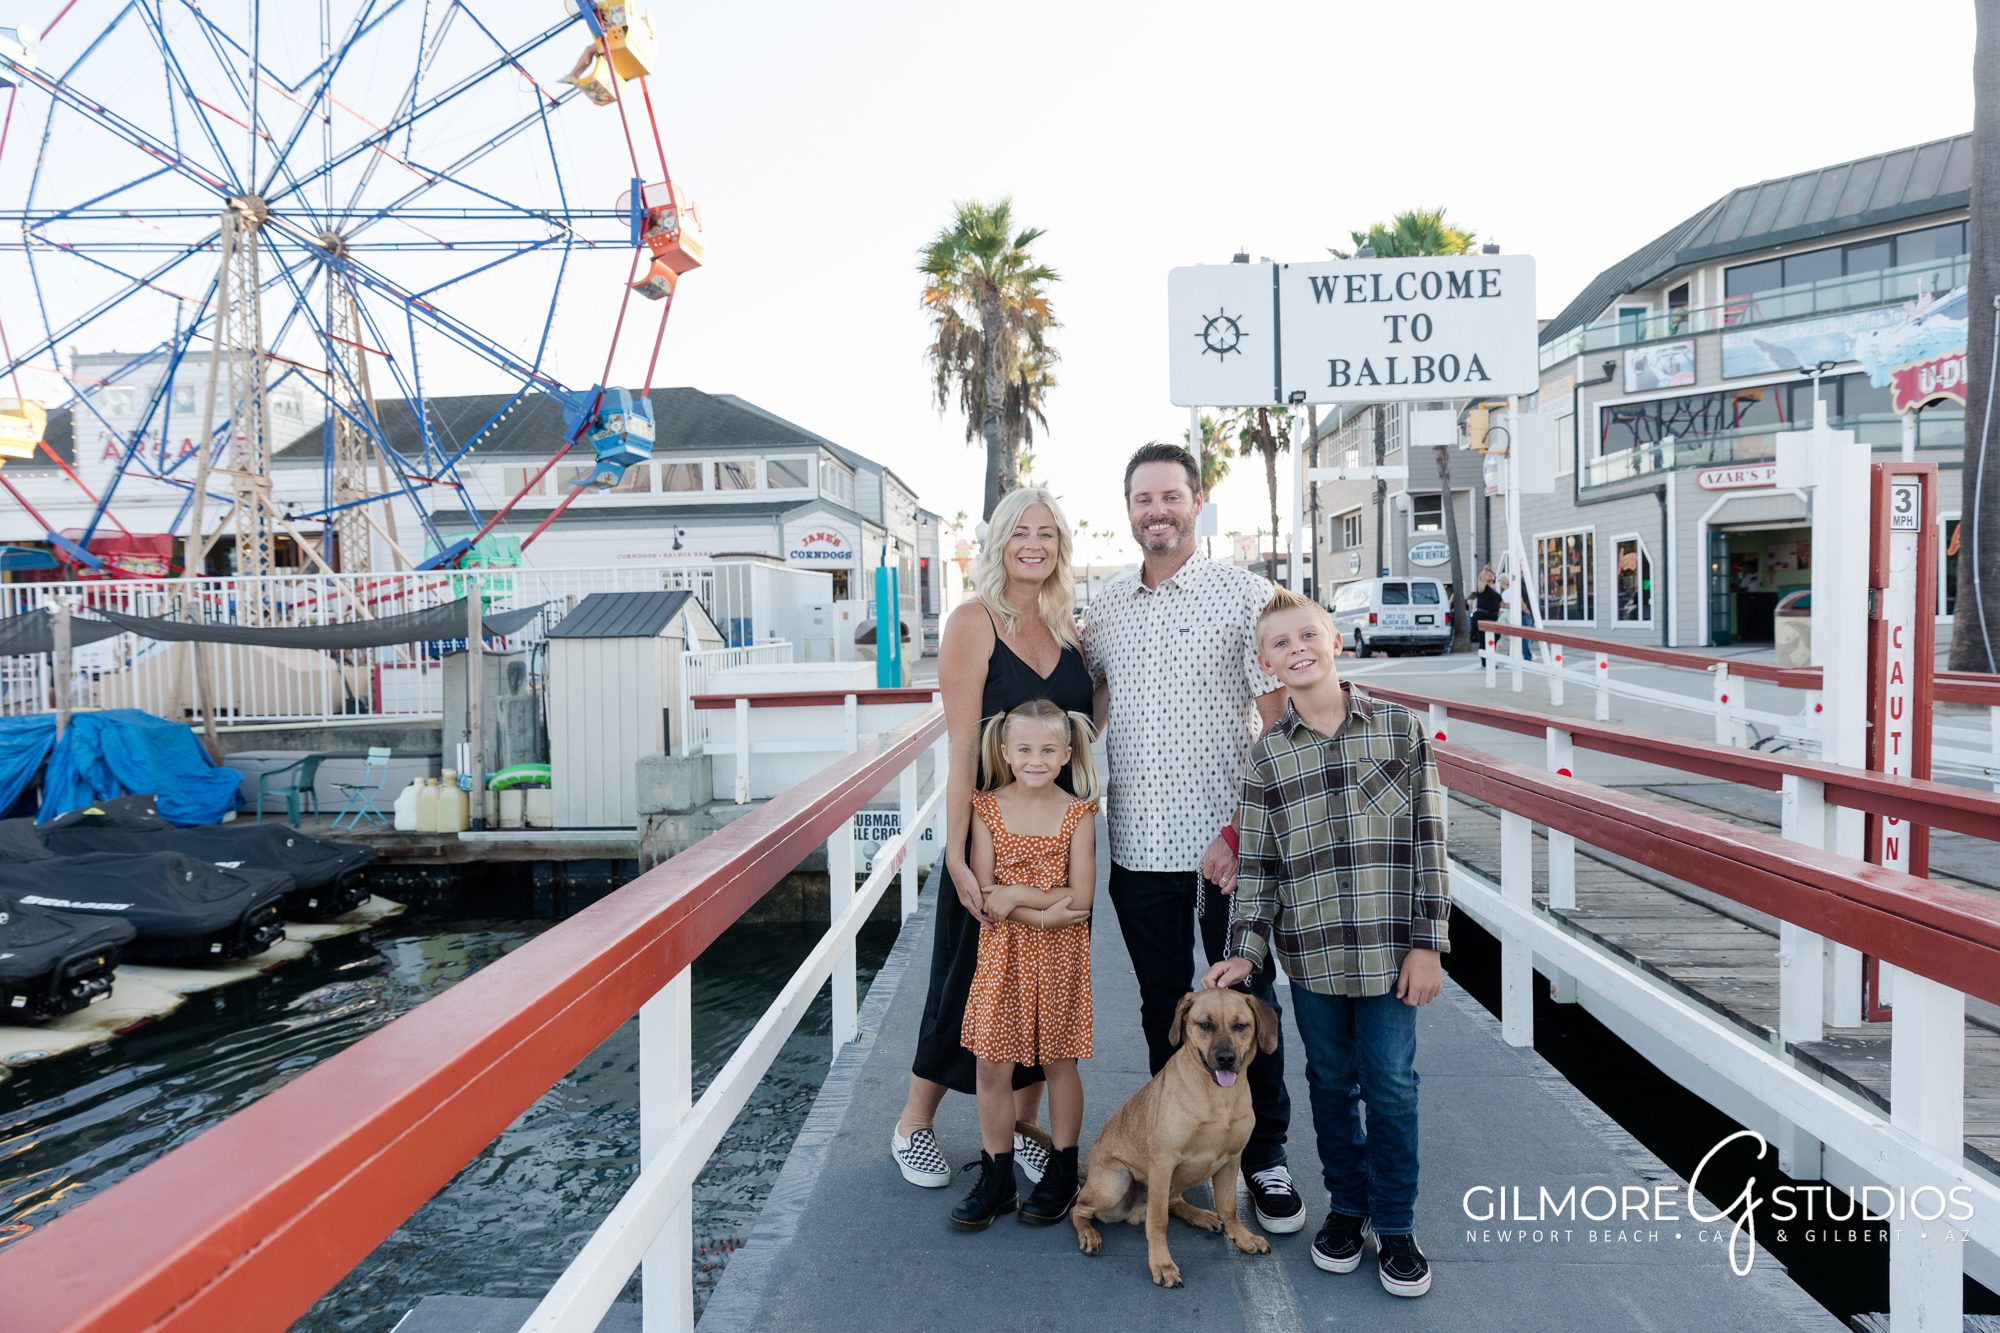 Balboa Fun Zone Family Portrait Photographer, Welcome to Balboa sign, Balboa Ferris Wheel, Balboa Ferry, pier, Jane's corn dogs, Balboa ice cream bar, Newport Beach, CA